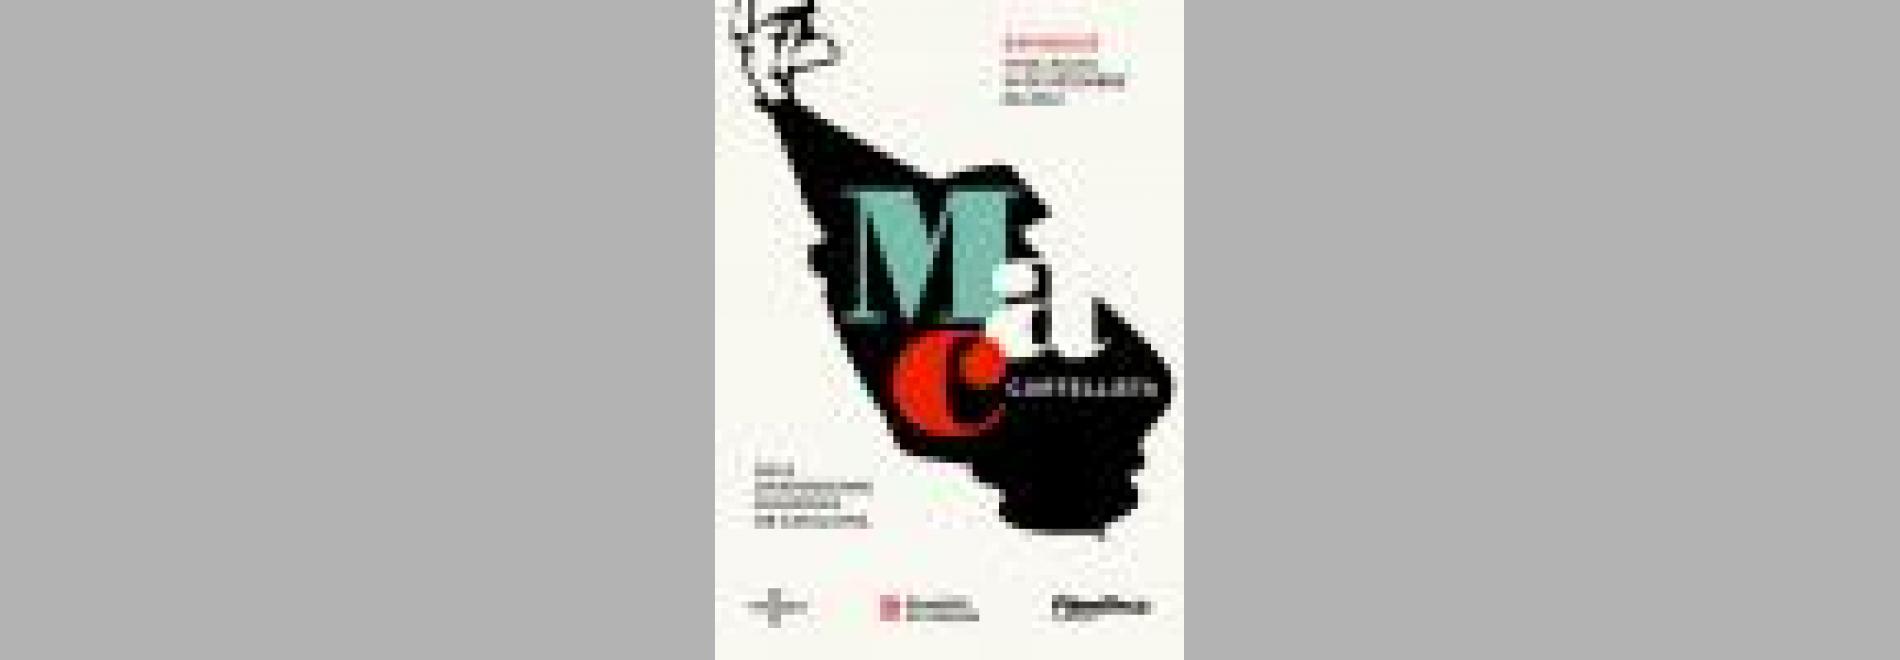 L'exposició 'Mac, cartellista' es complementa amb dues sessions especials de cinema